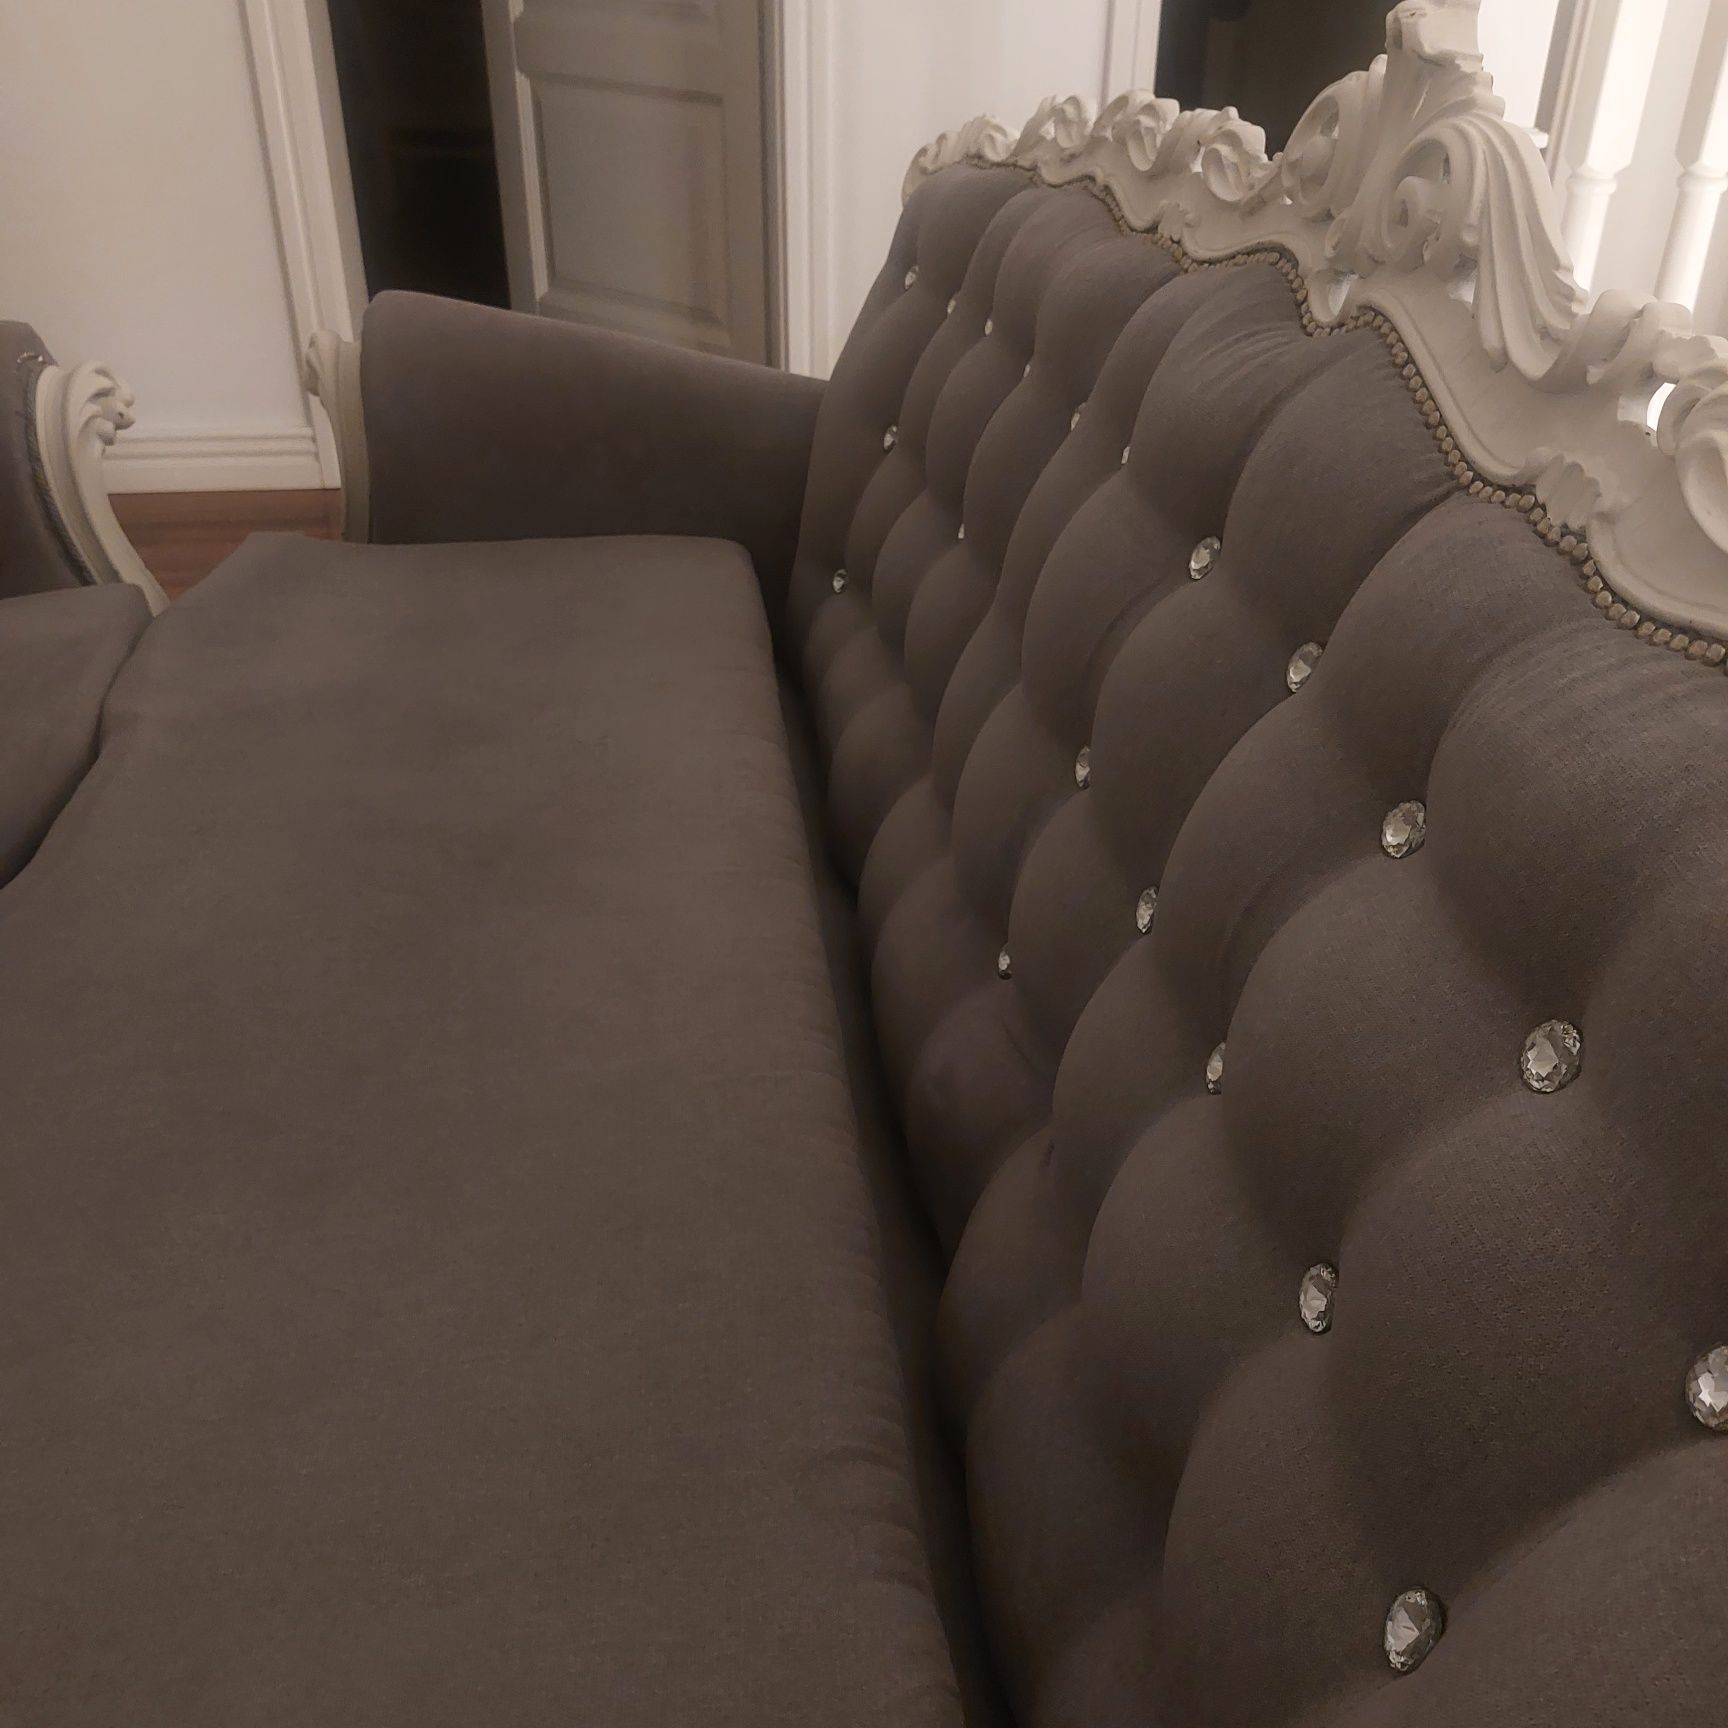 Sofa i fotele pikowane z kryształami